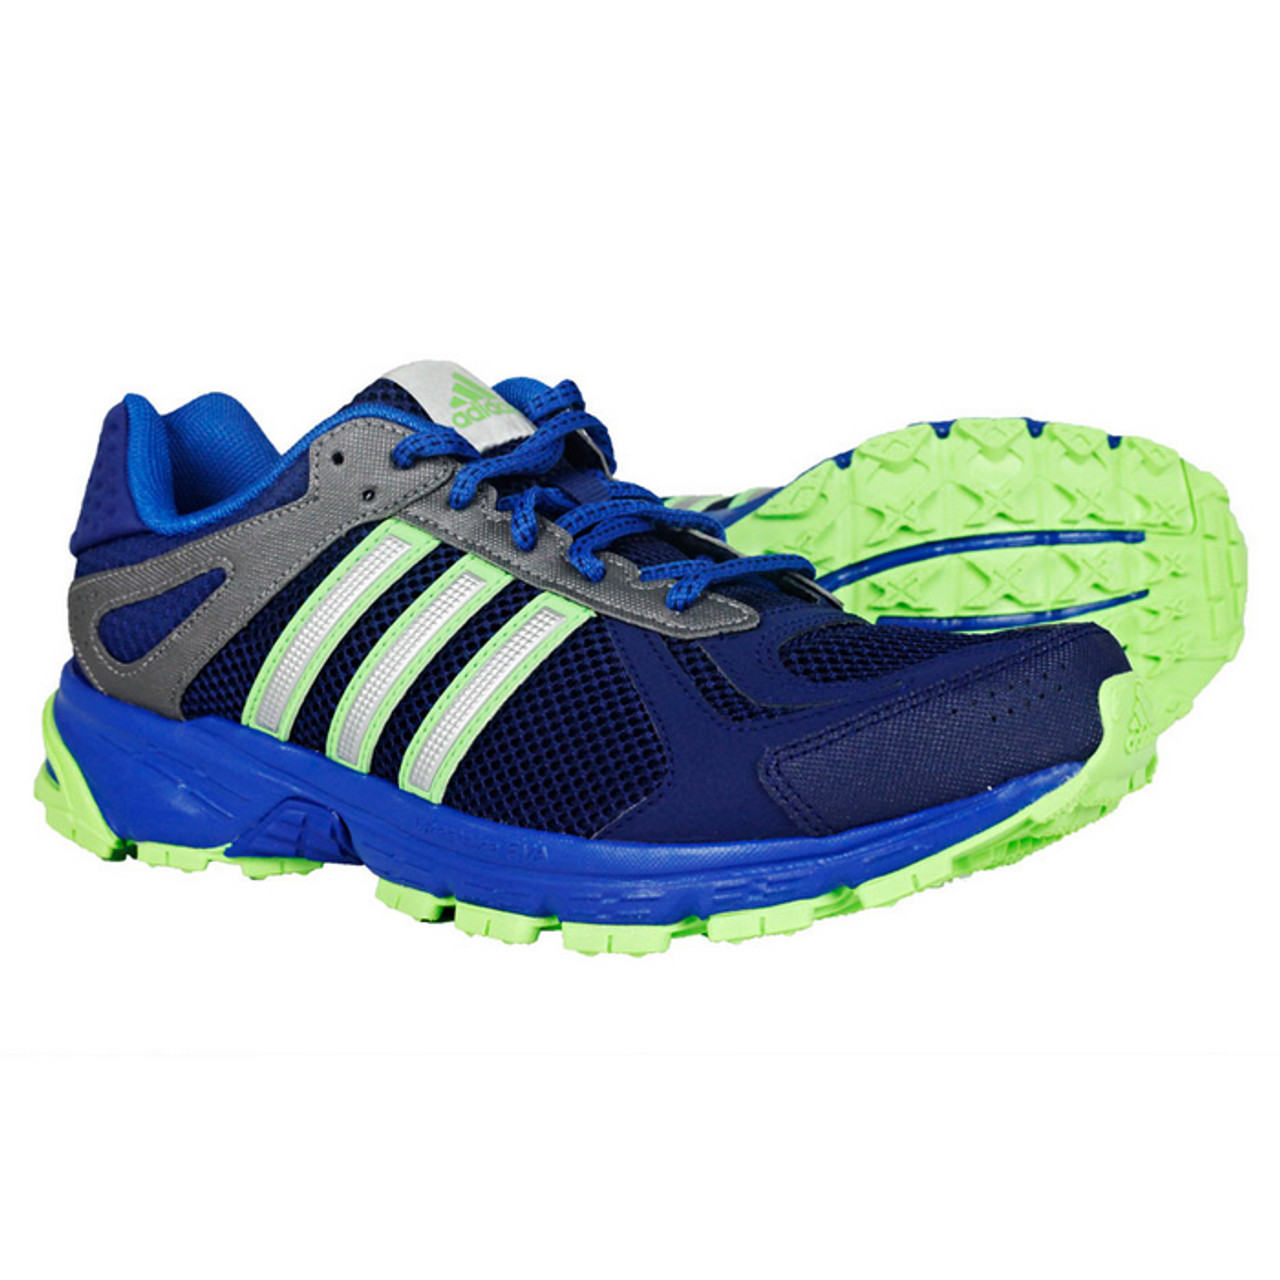 Duramo TR Blue/Green Mens Shoes - | Discount Adidas Men's Athletic Shoes & More - Shoolu.com | Shoolu.com